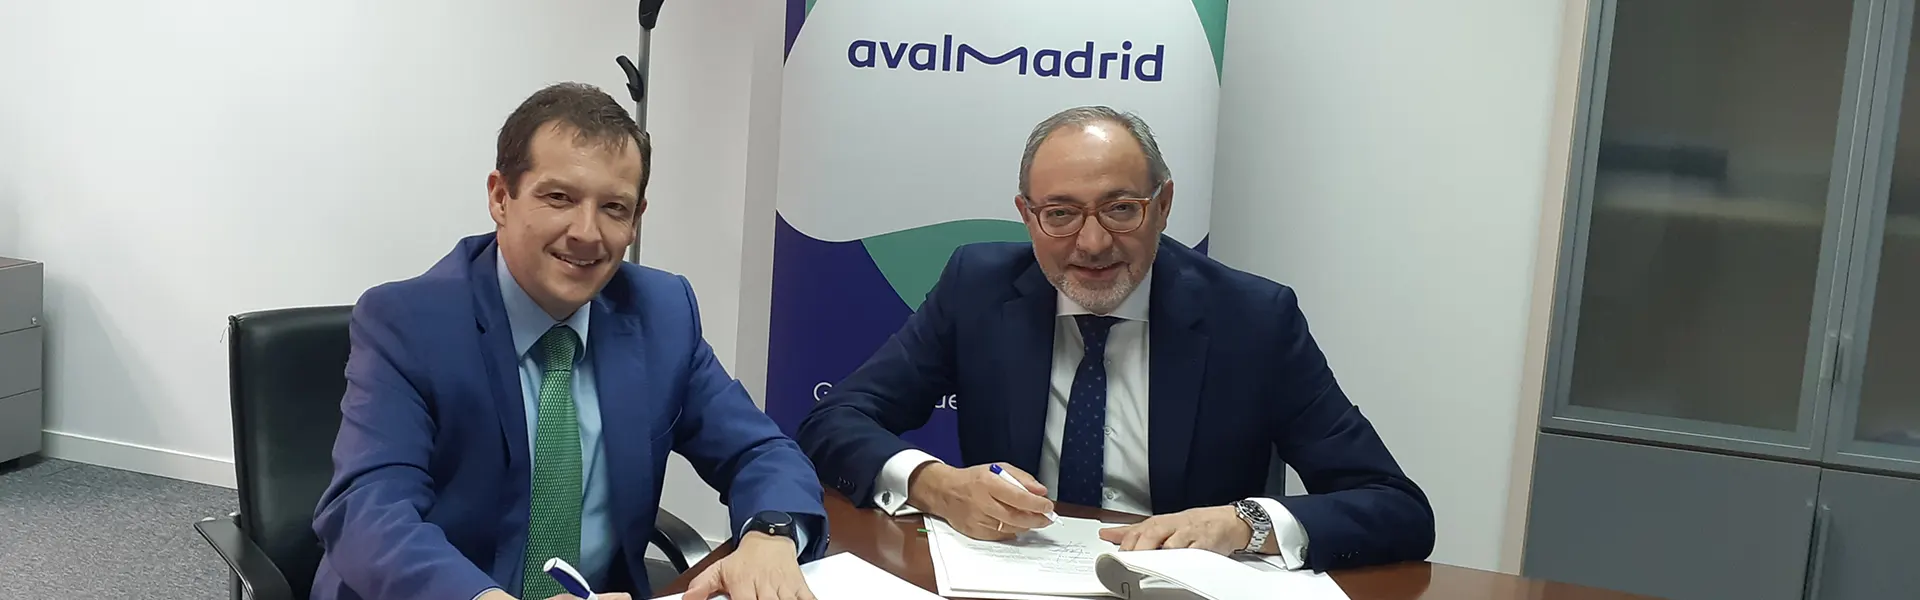 Avalmadrid firma un acuerdo con Banca Pueyo para facilitar financiación al tejido empresarial madrileño ultimas noticias